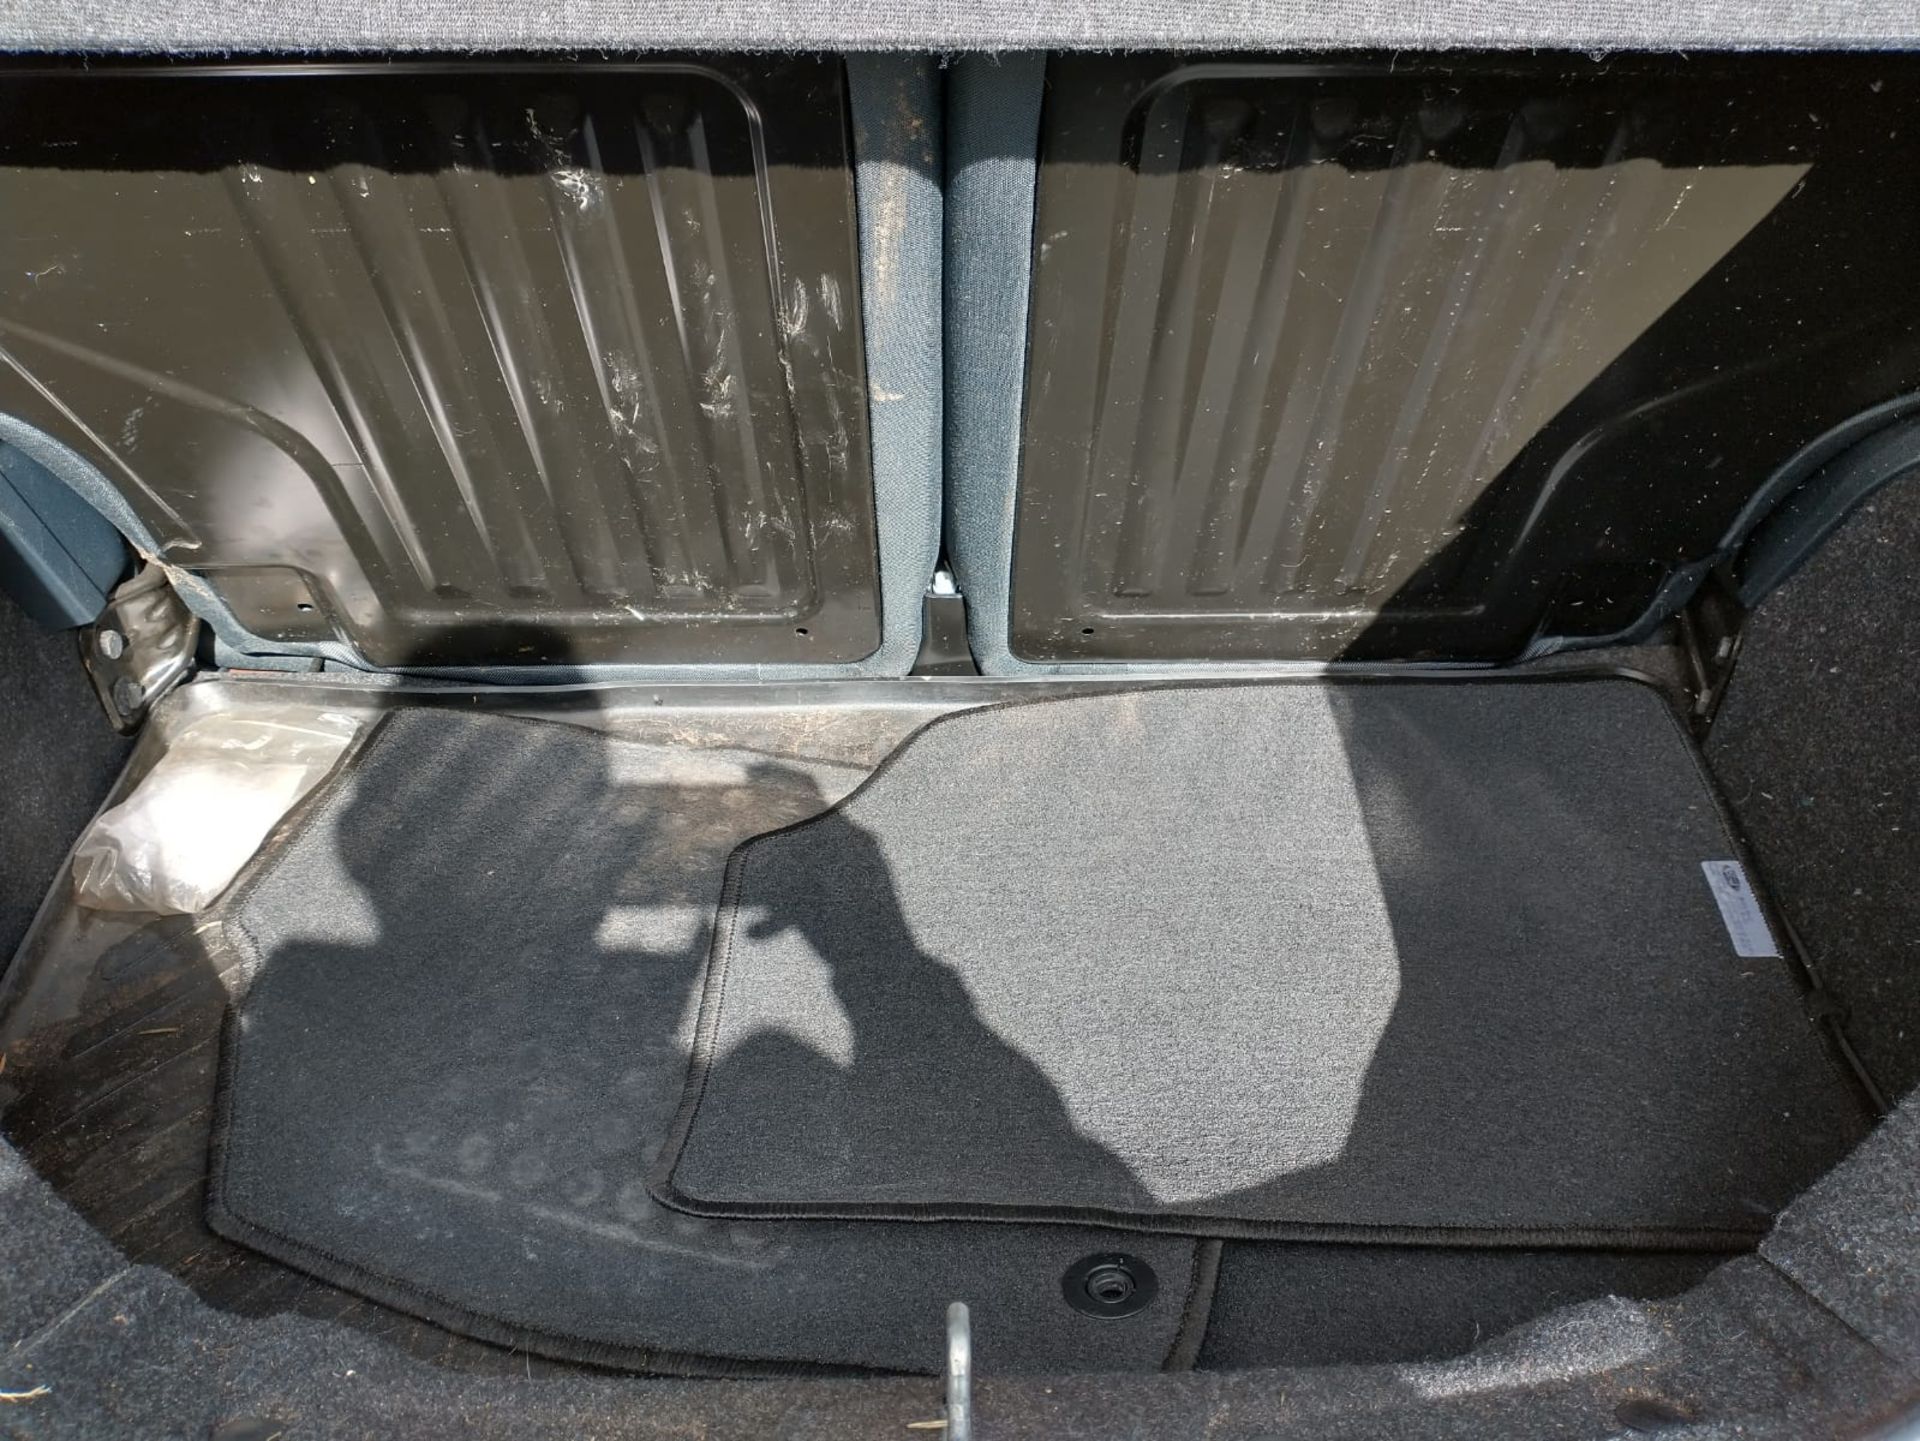 2013 Ford Ka Titanium 1.3 3Dr Hatchback - Image 10 of 14